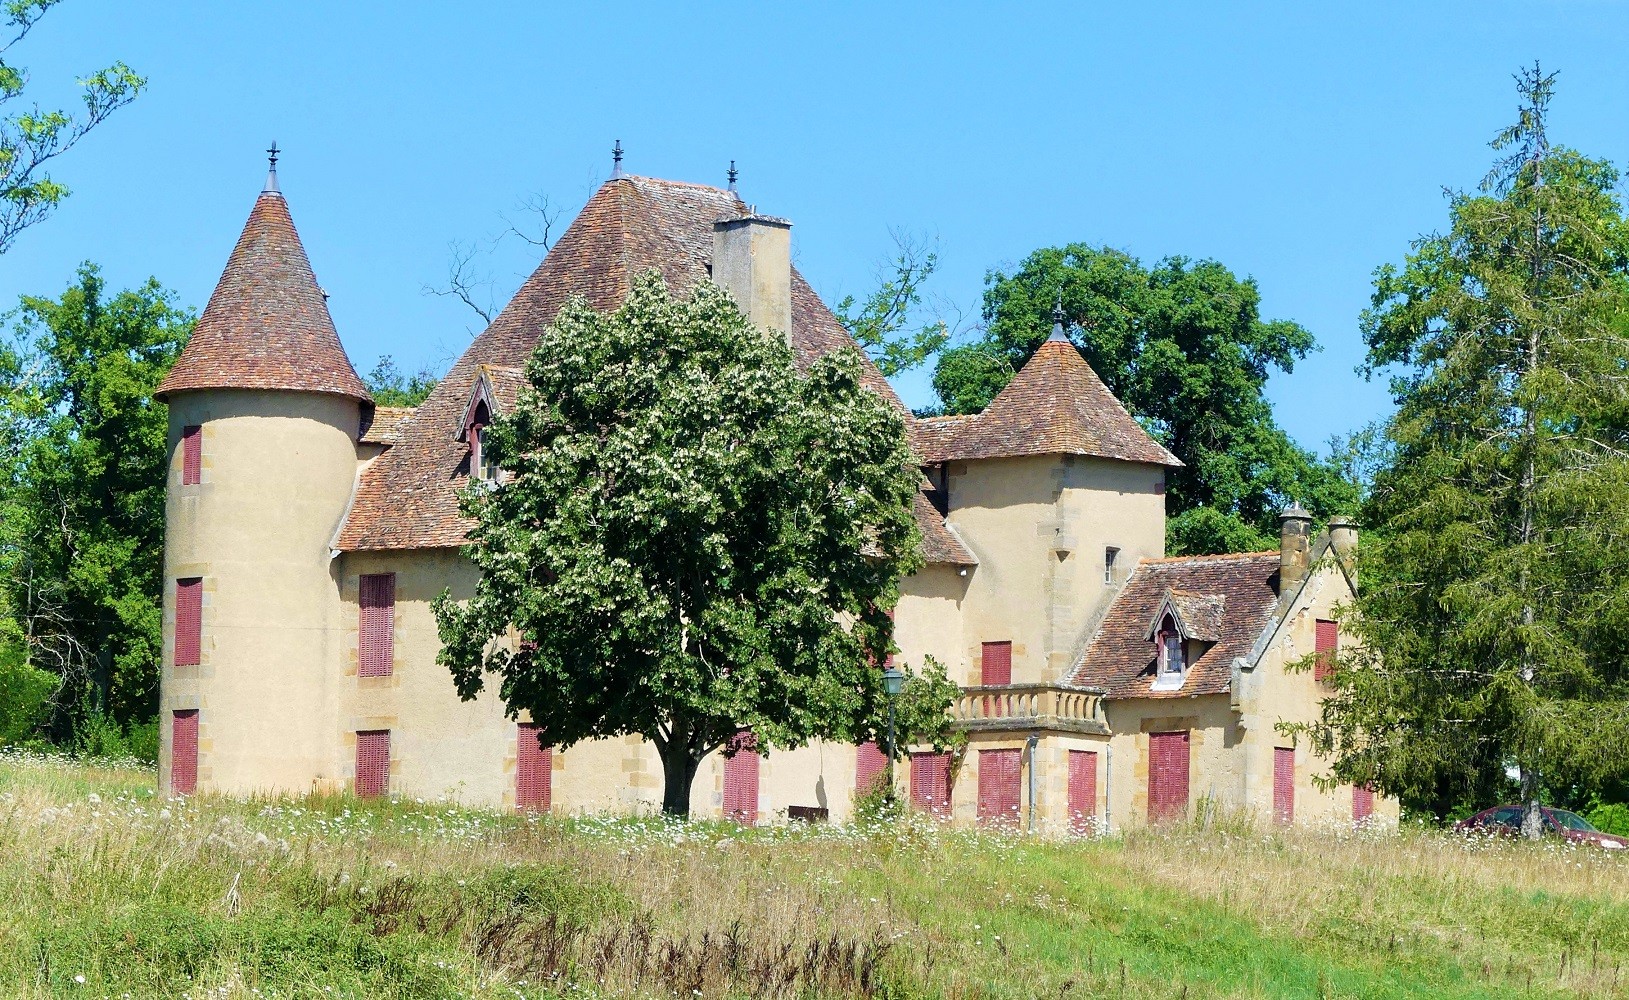 Chateau de Monceau